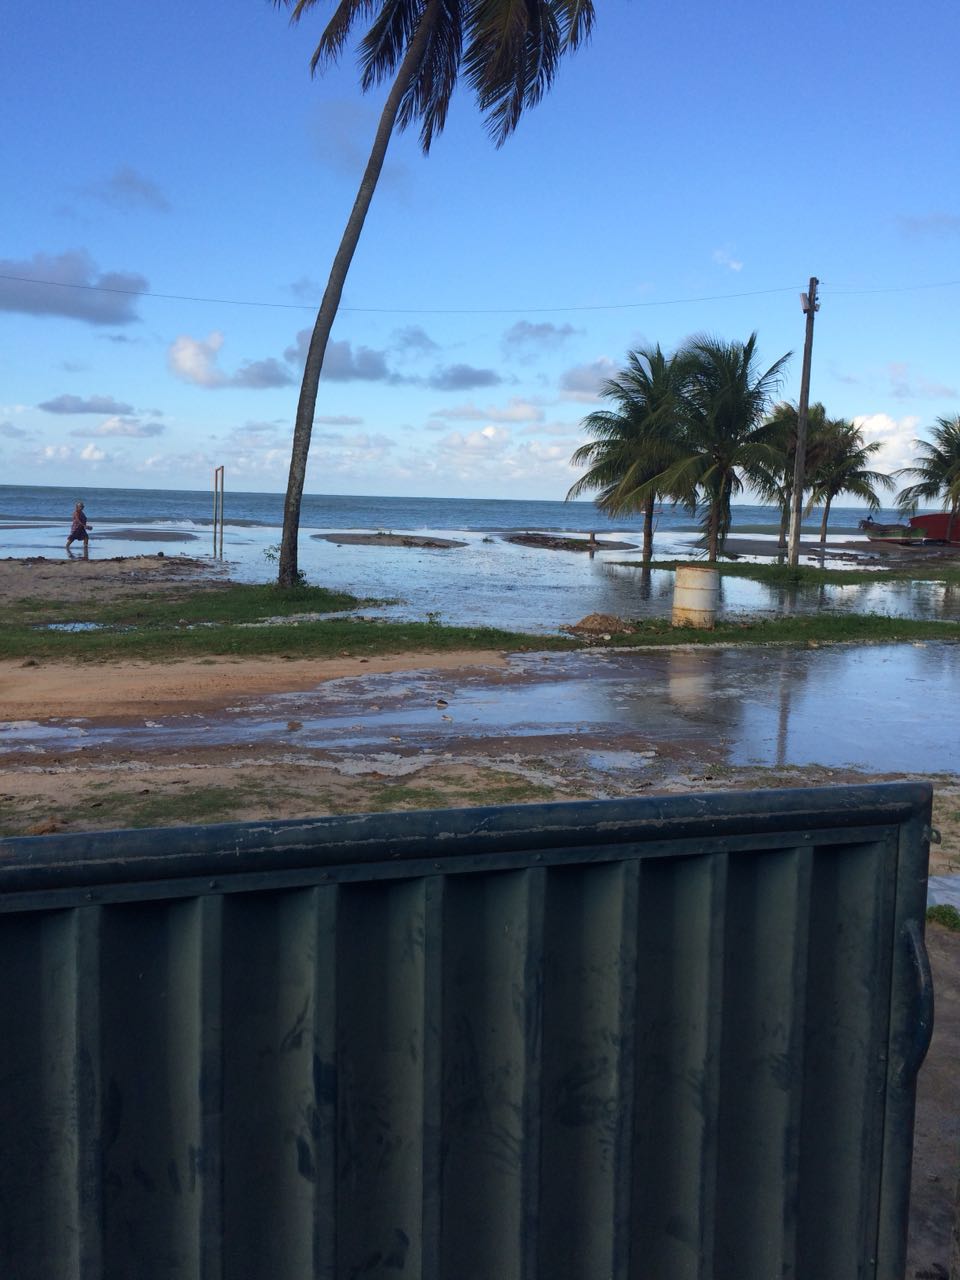 17258adb 8c13 4626 ac77 dc5c71612215 - VEJA VÍDEOS: Ressaca causa inundações nas praias de Tambaú e Cabo Branco